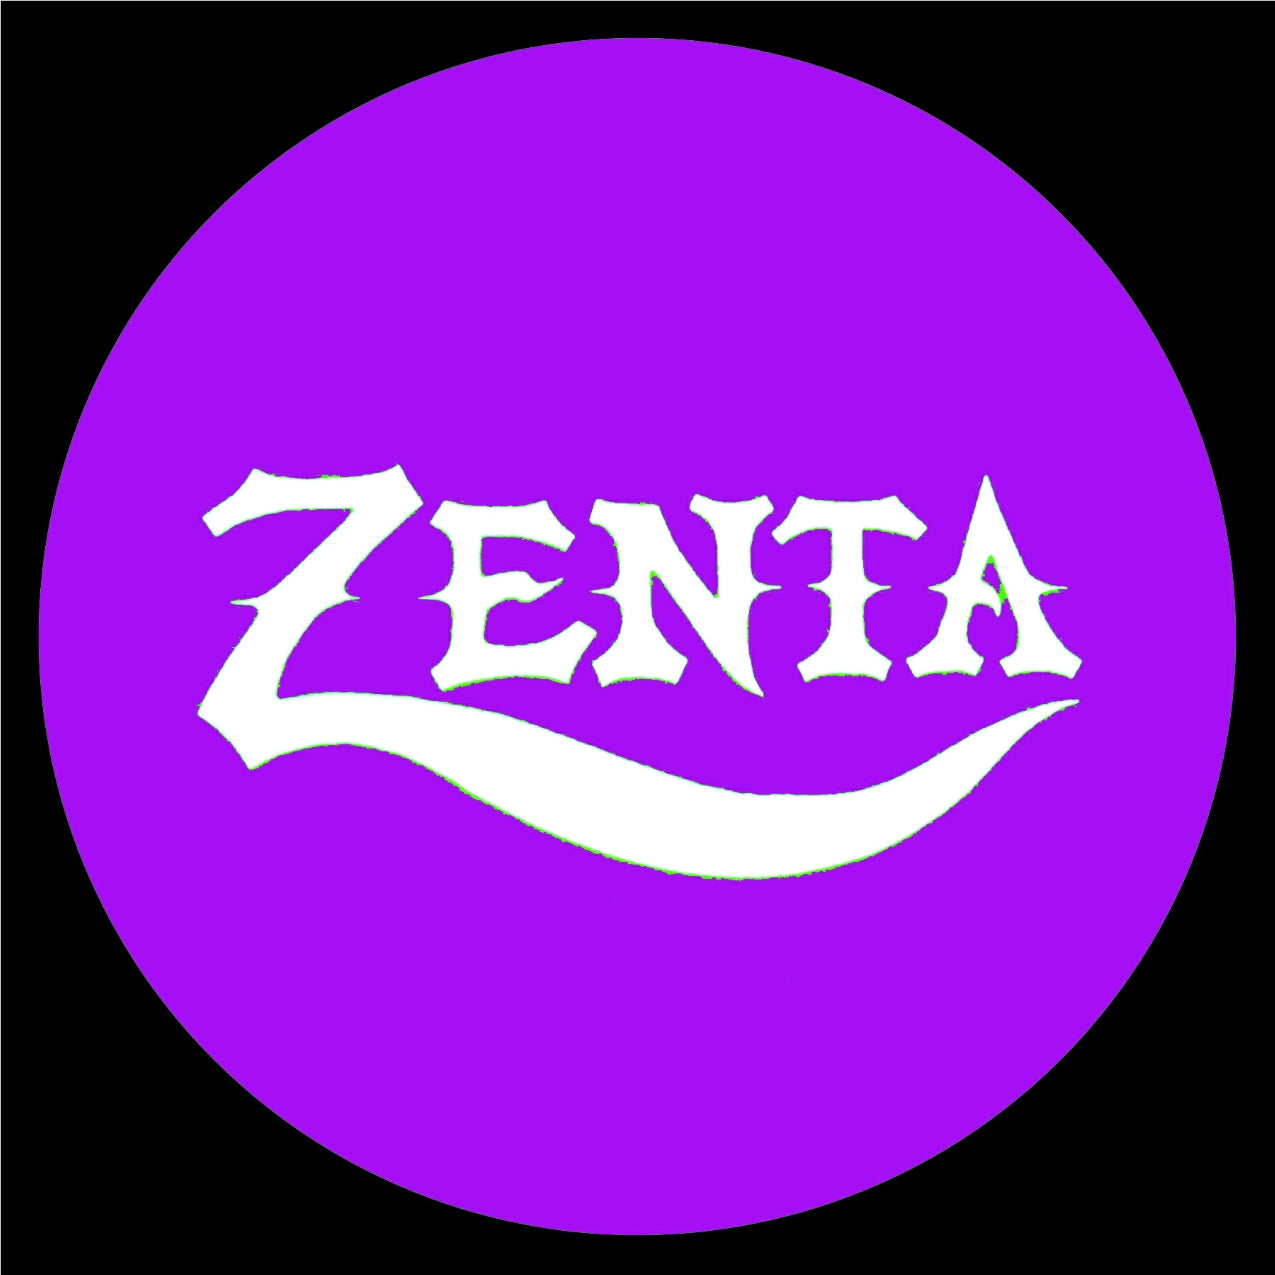 ZENTA 1.5 " button